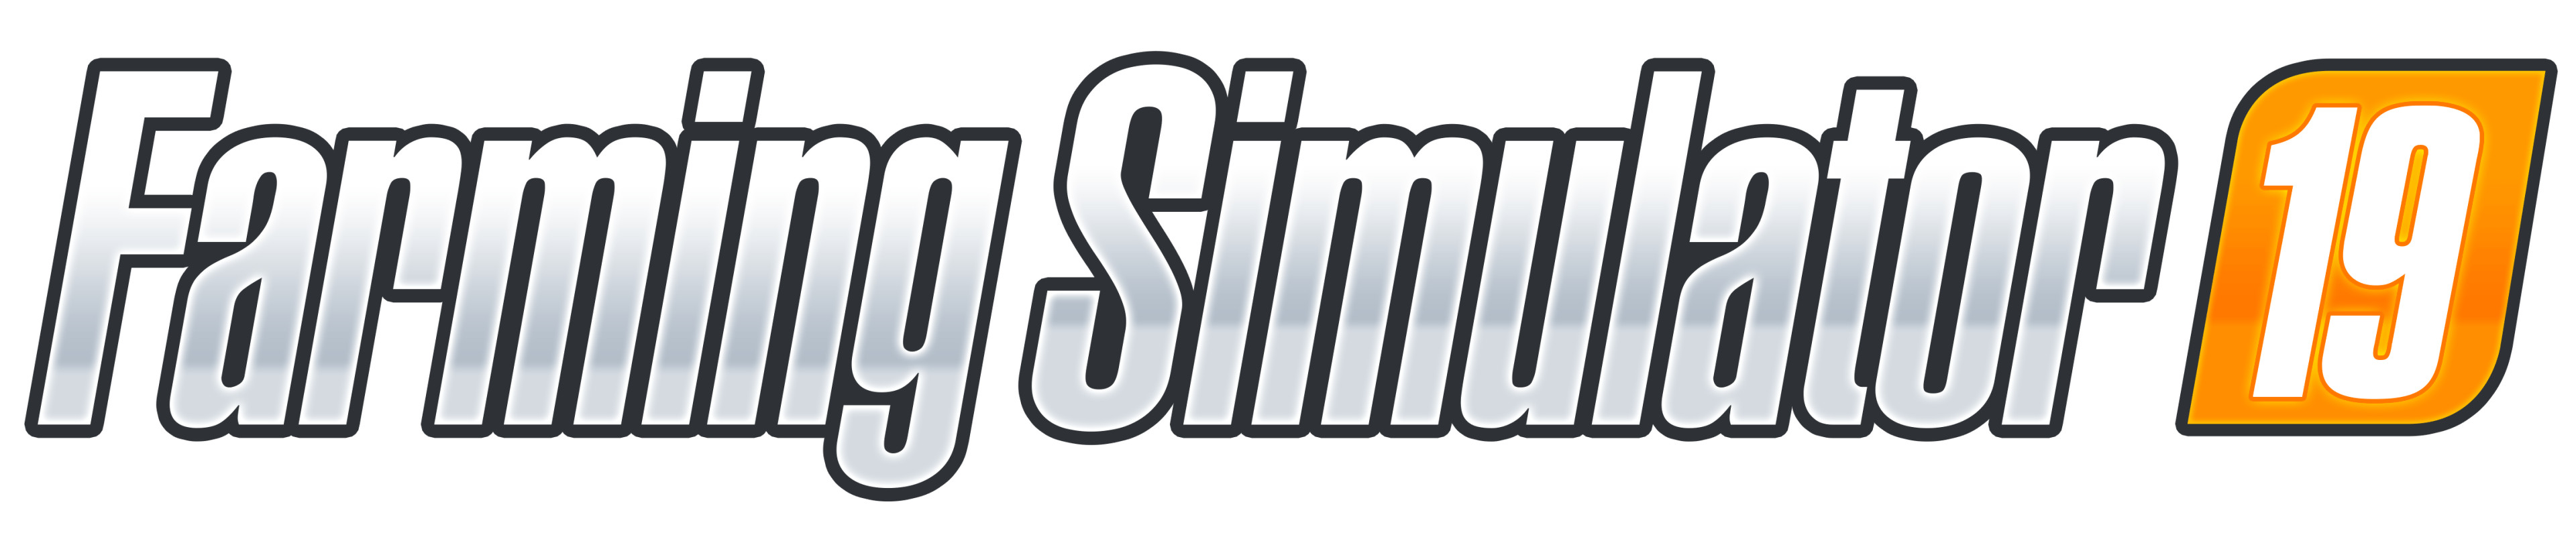 Логотип Farming Simulator 19